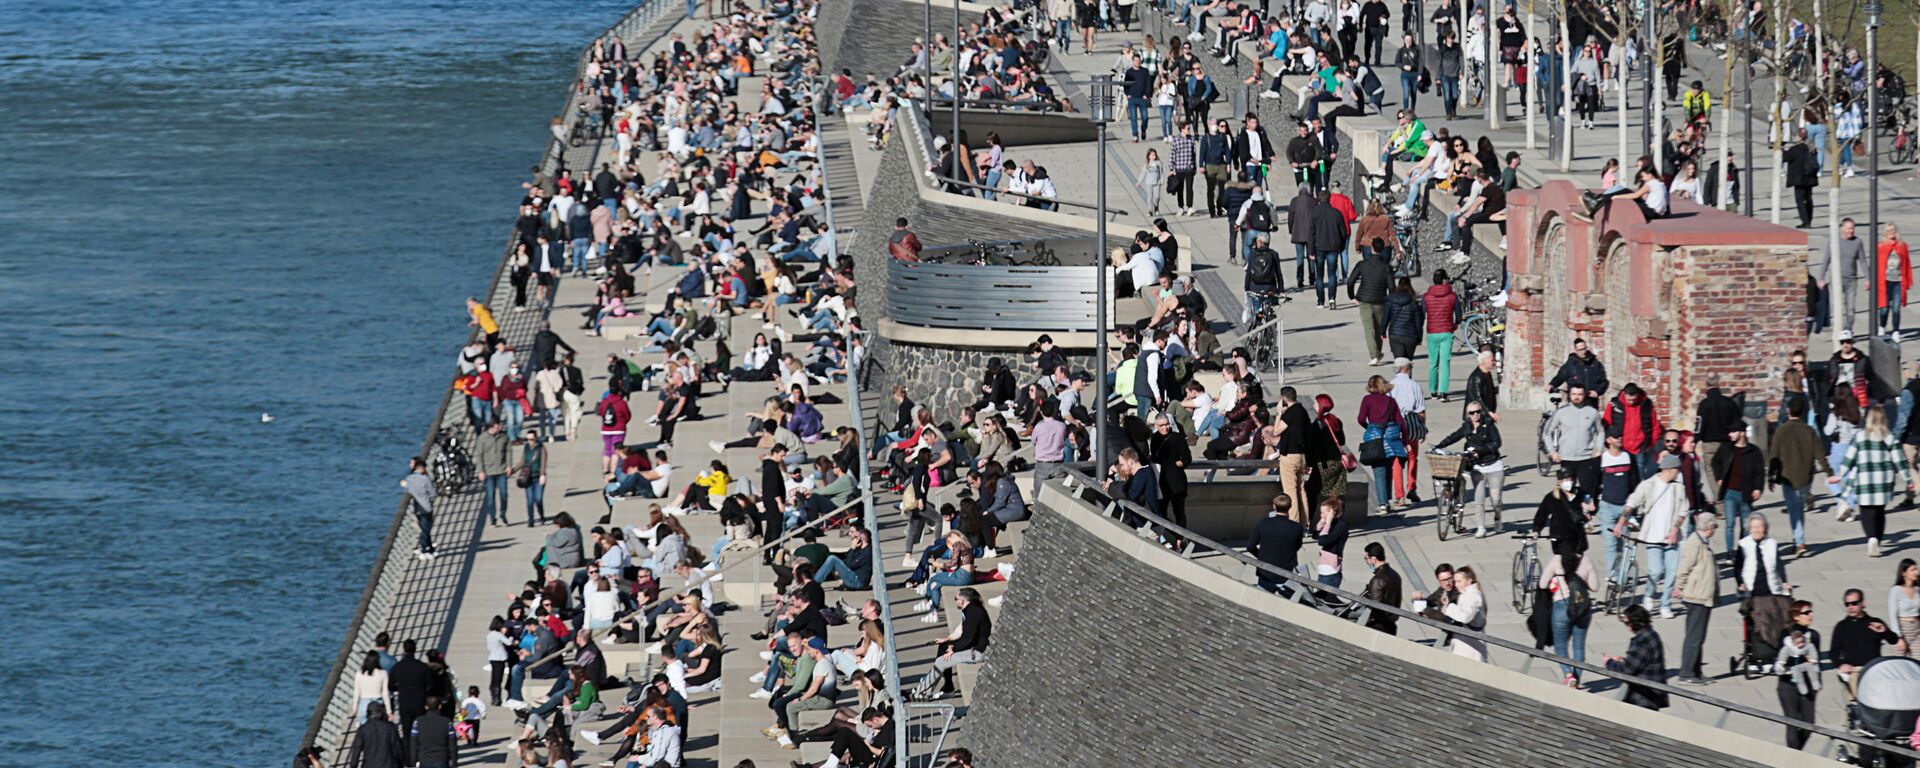 يقضي الناس وقتًا تحت أشعة الشمس على ضفاف نهر الراين وسط جائحة كورونا (كوفيد-19) في مدينة كولونيا في ألمانيا، 21 فبراير 2021. - سبوتنيك عربي, 1920, 11.06.2021